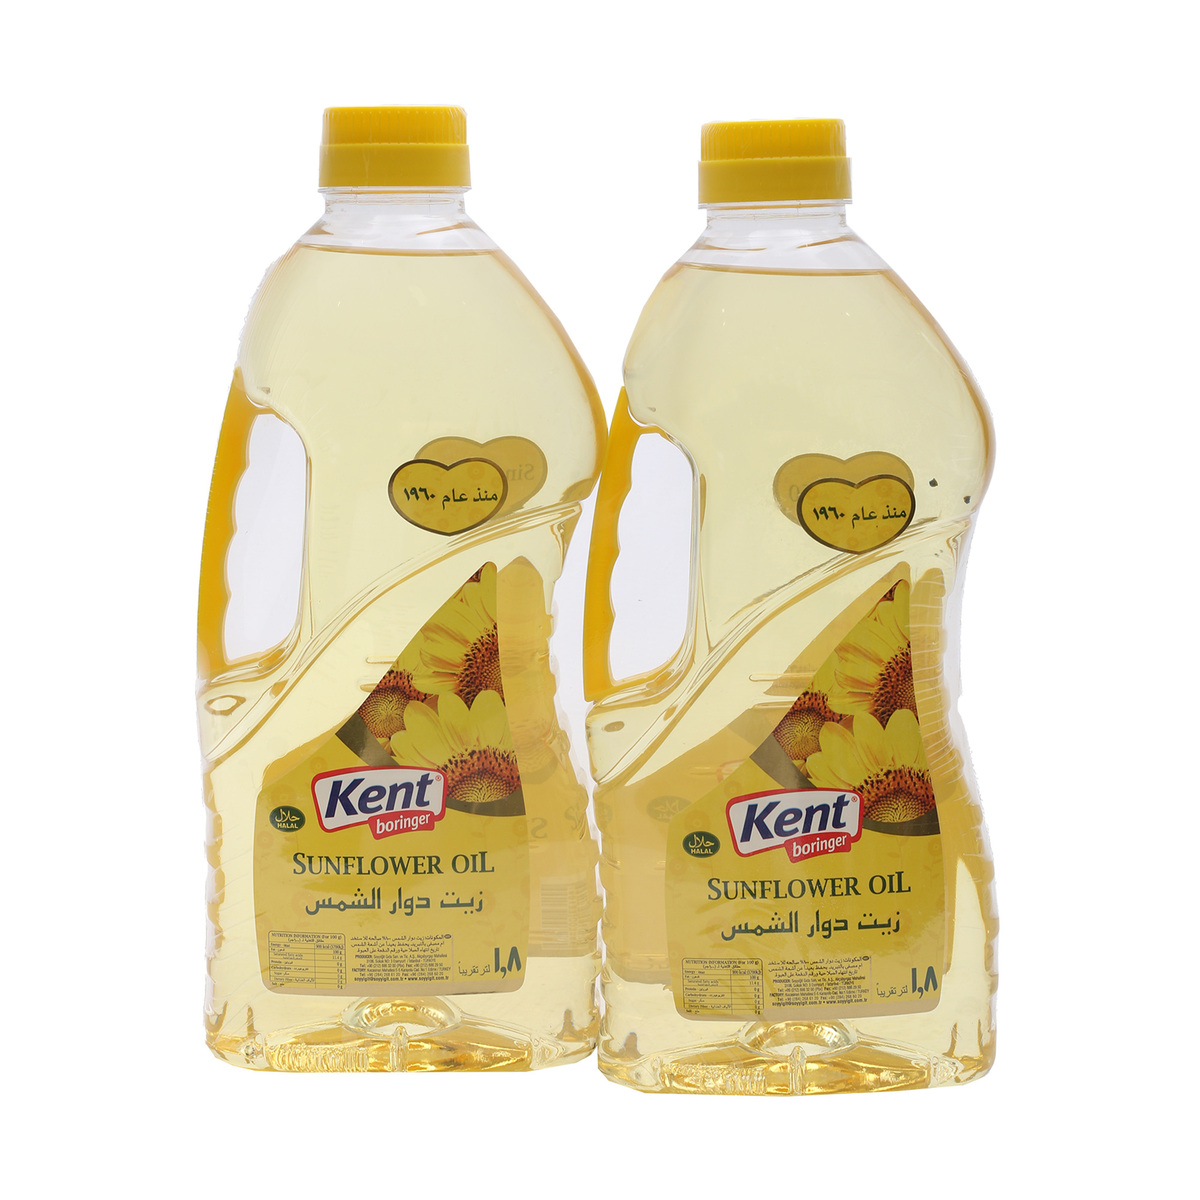 Kent Boringer Sunflower Oil Value Pack 2 x 1.8Litre